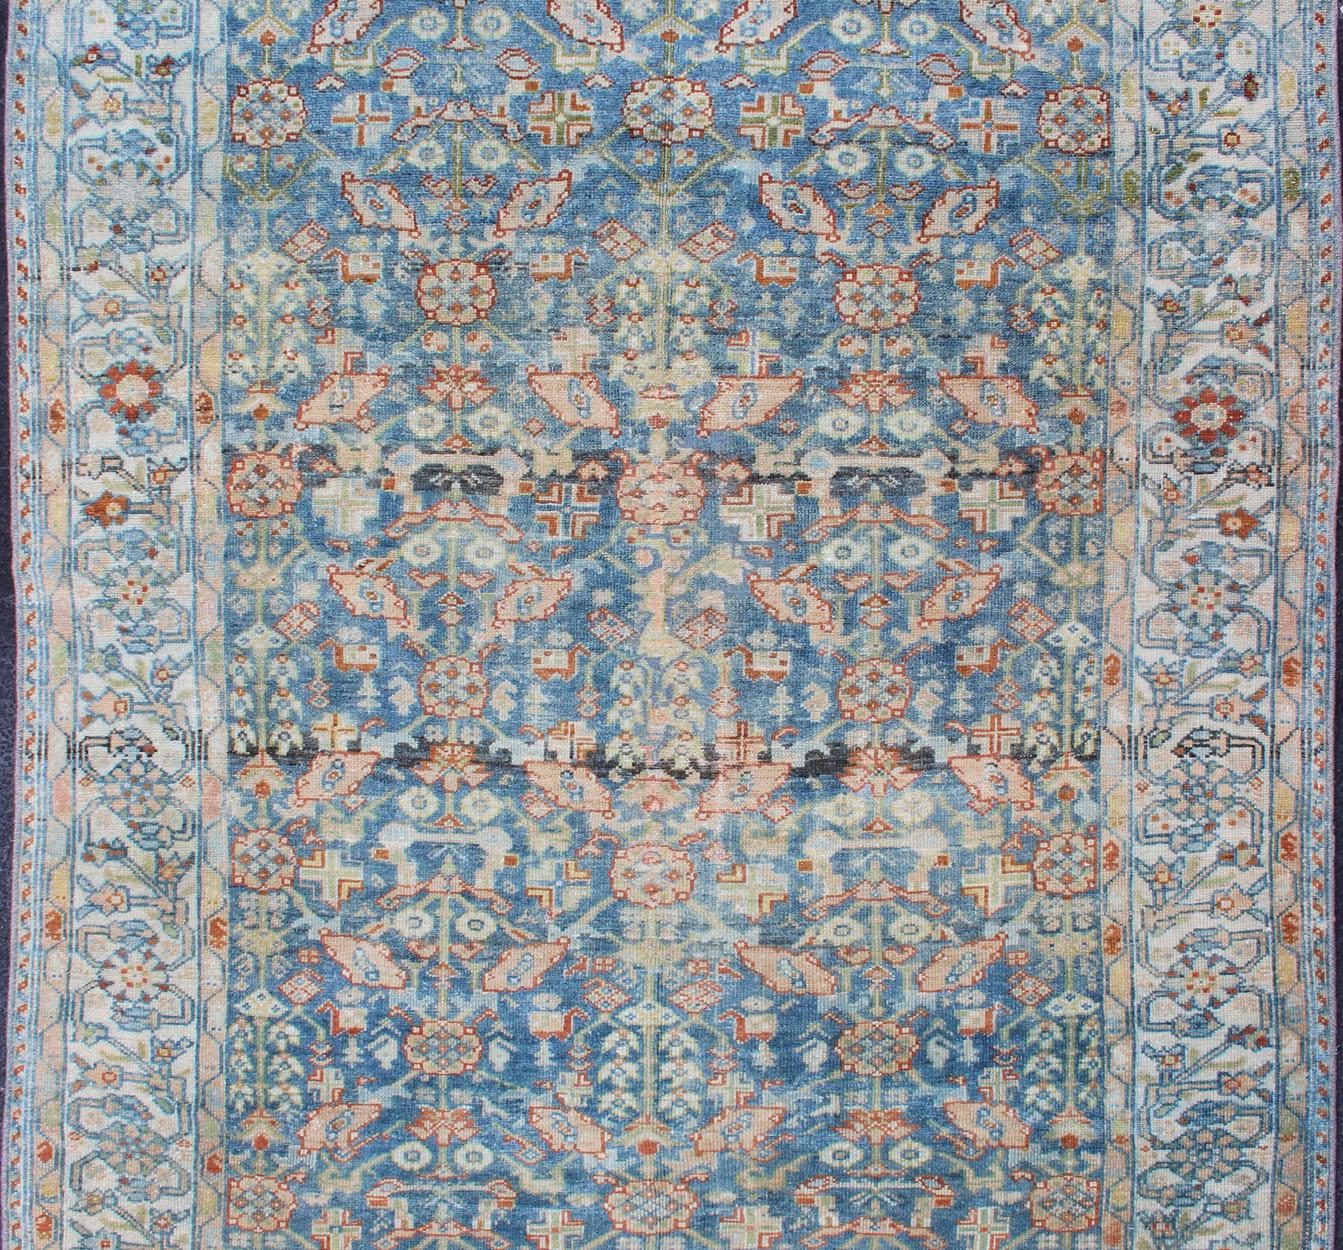 Antiker Perserteppich mit blauem Feld und elfenbeinfarbener Bordüre, Teppich SUS-2007-465, Herkunftsland / Typ: Iran / Malayer, um 1920.

Dieser traditionelle persische Malayer-Teppich aus dem frühen 20. Jahrhundert zeichnet sich durch ein